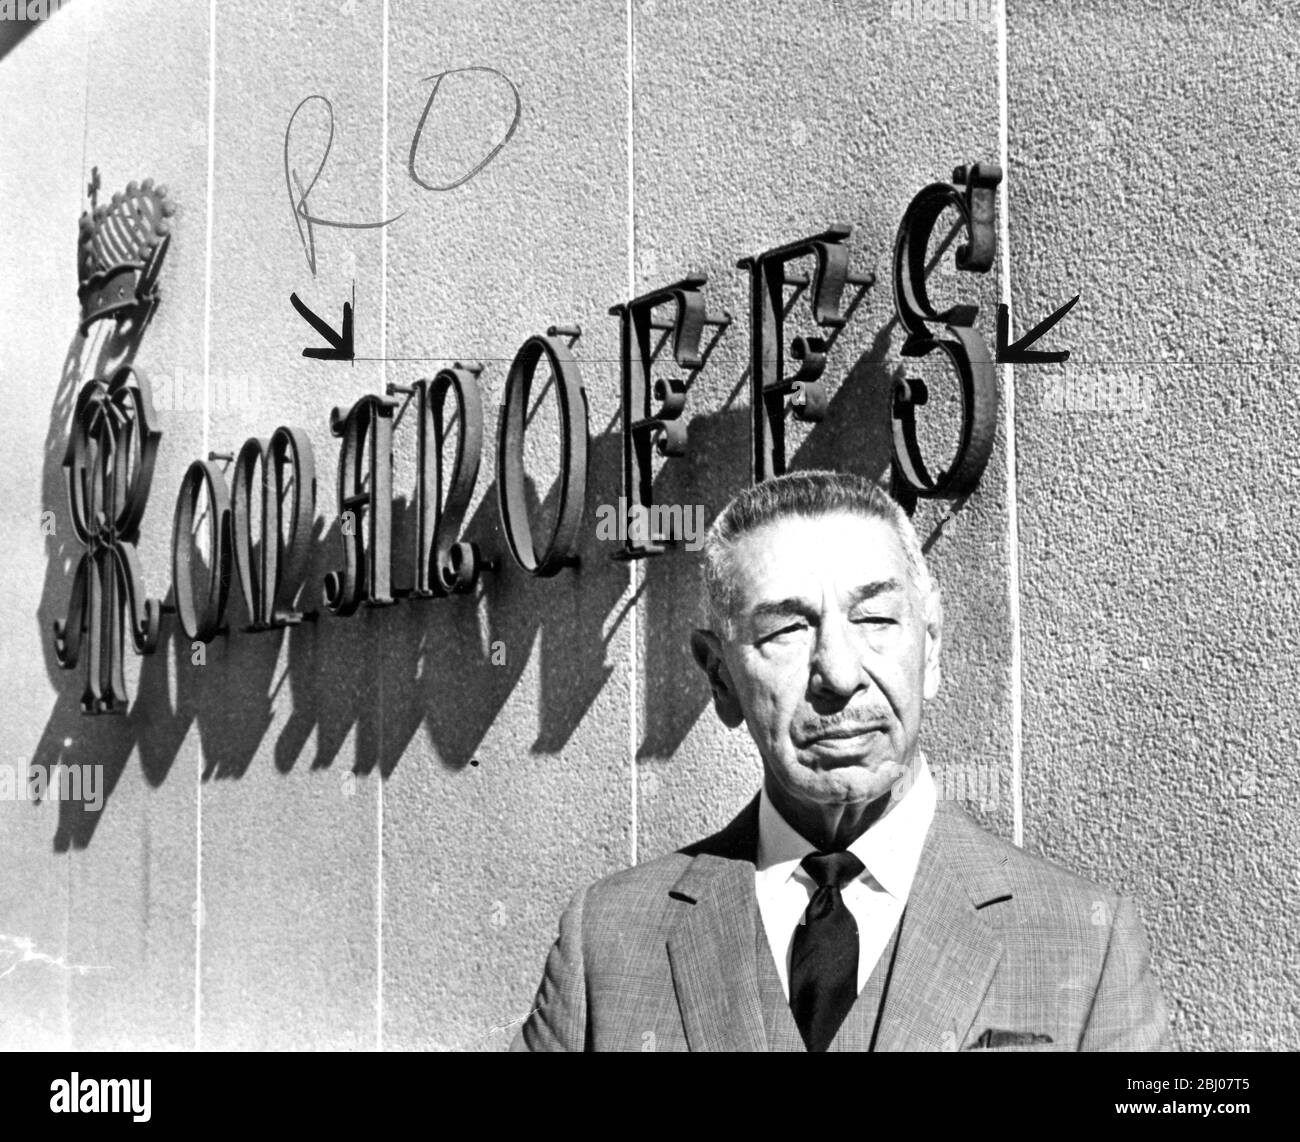 Il ristorante Mike Ramanoff è mostrato di fronte al suo esclusivo ristorante, il Romanoff's. - - 27 dicembre 1962 Foto Stock